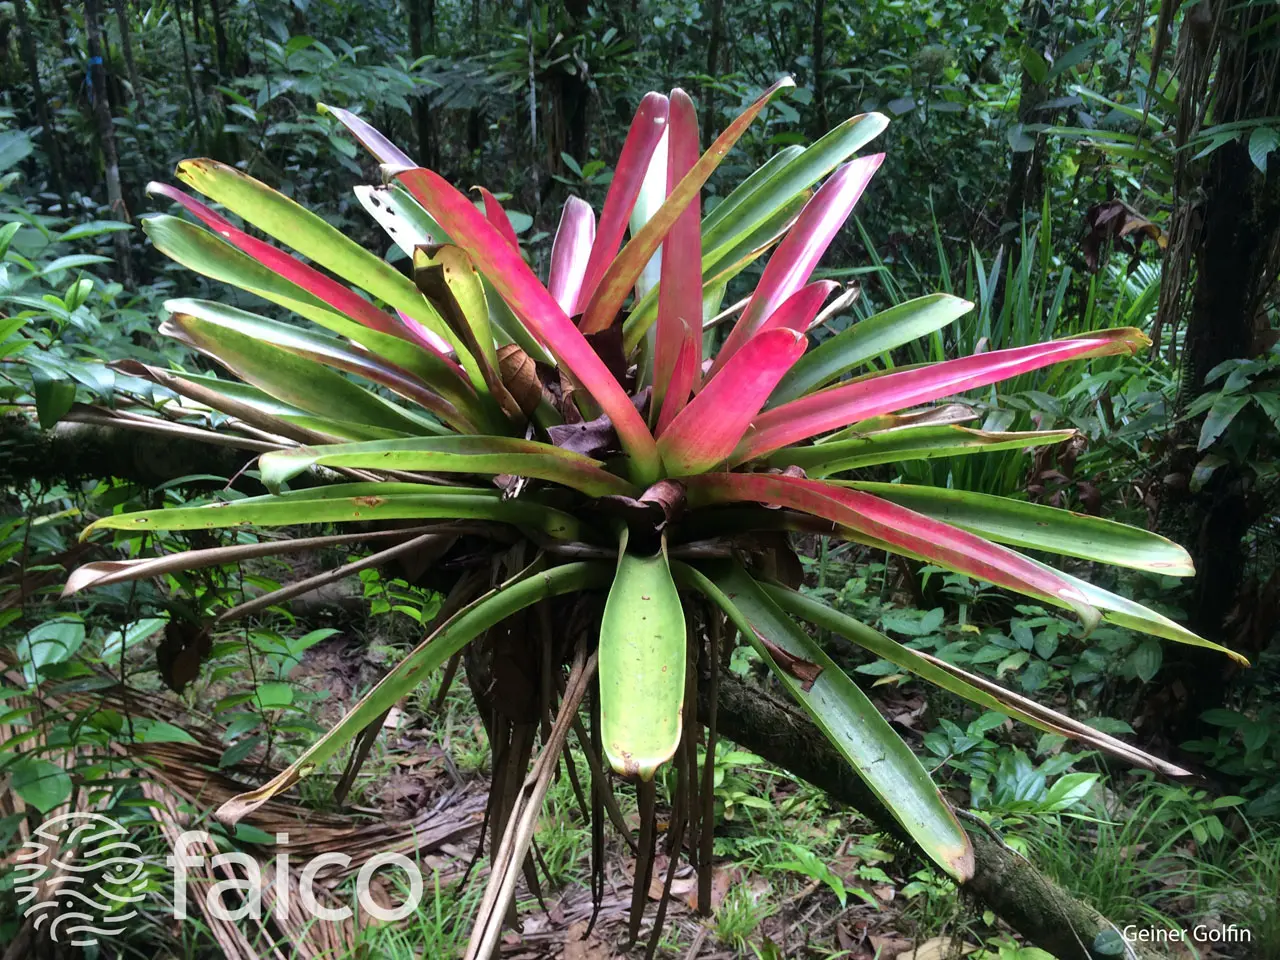 parque nacional isla del coco flora y fauna - Que se puede encontrar en la Isla del Coco